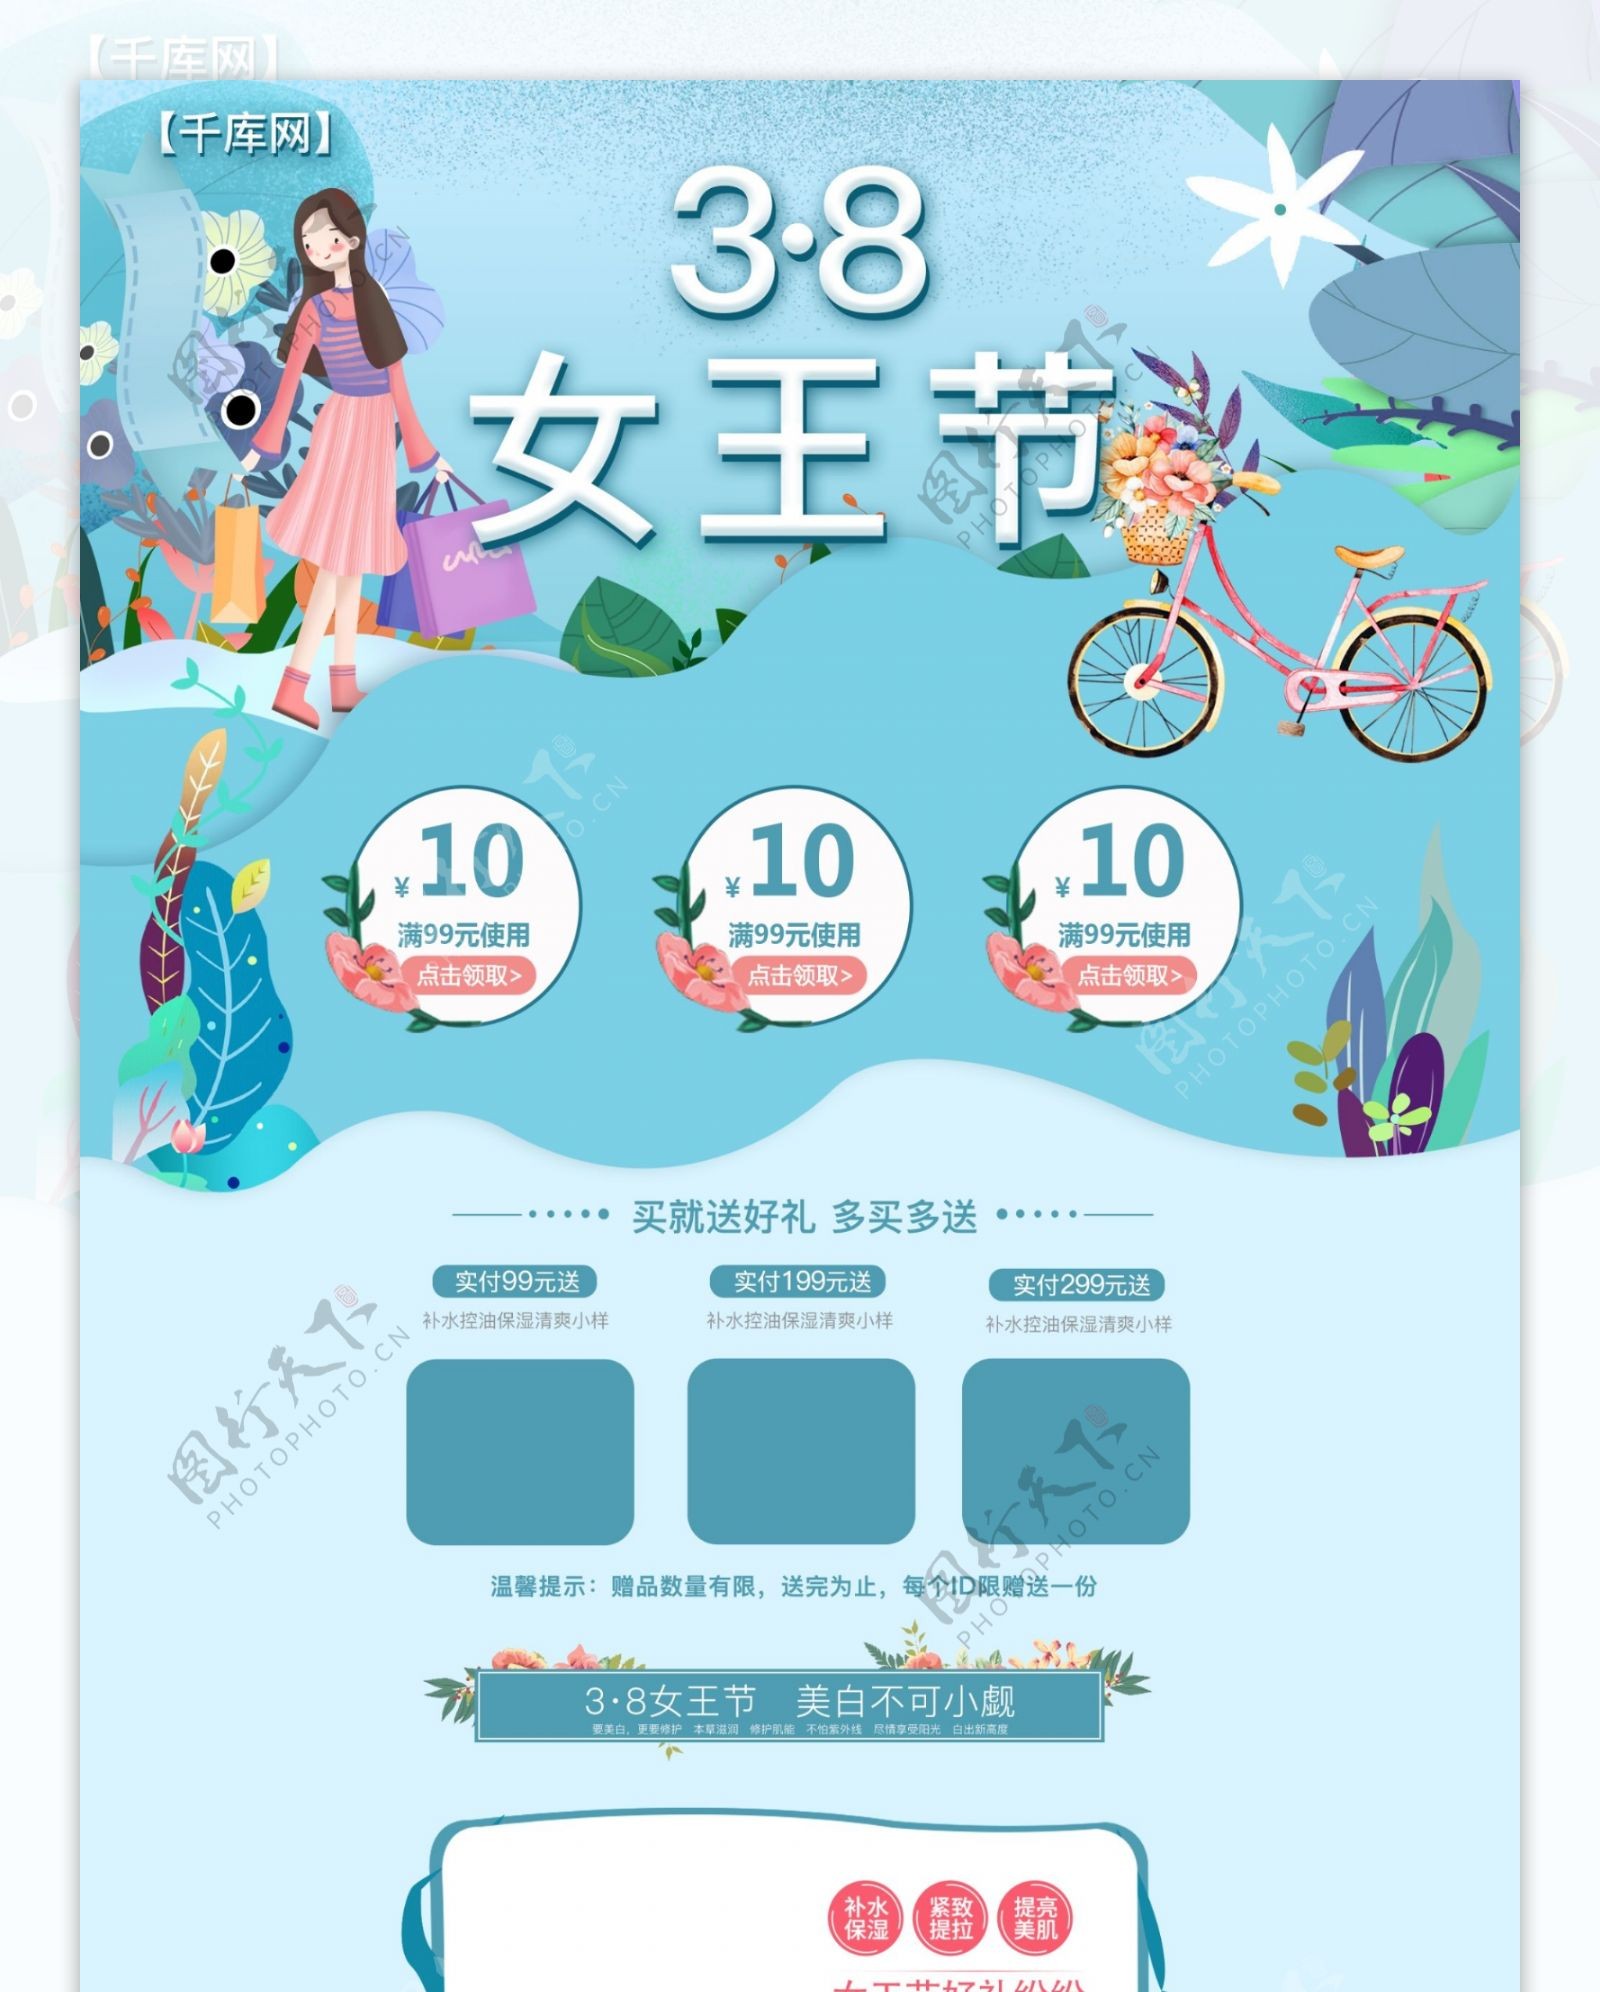 38女王节插画风蓝色淘宝首页模板